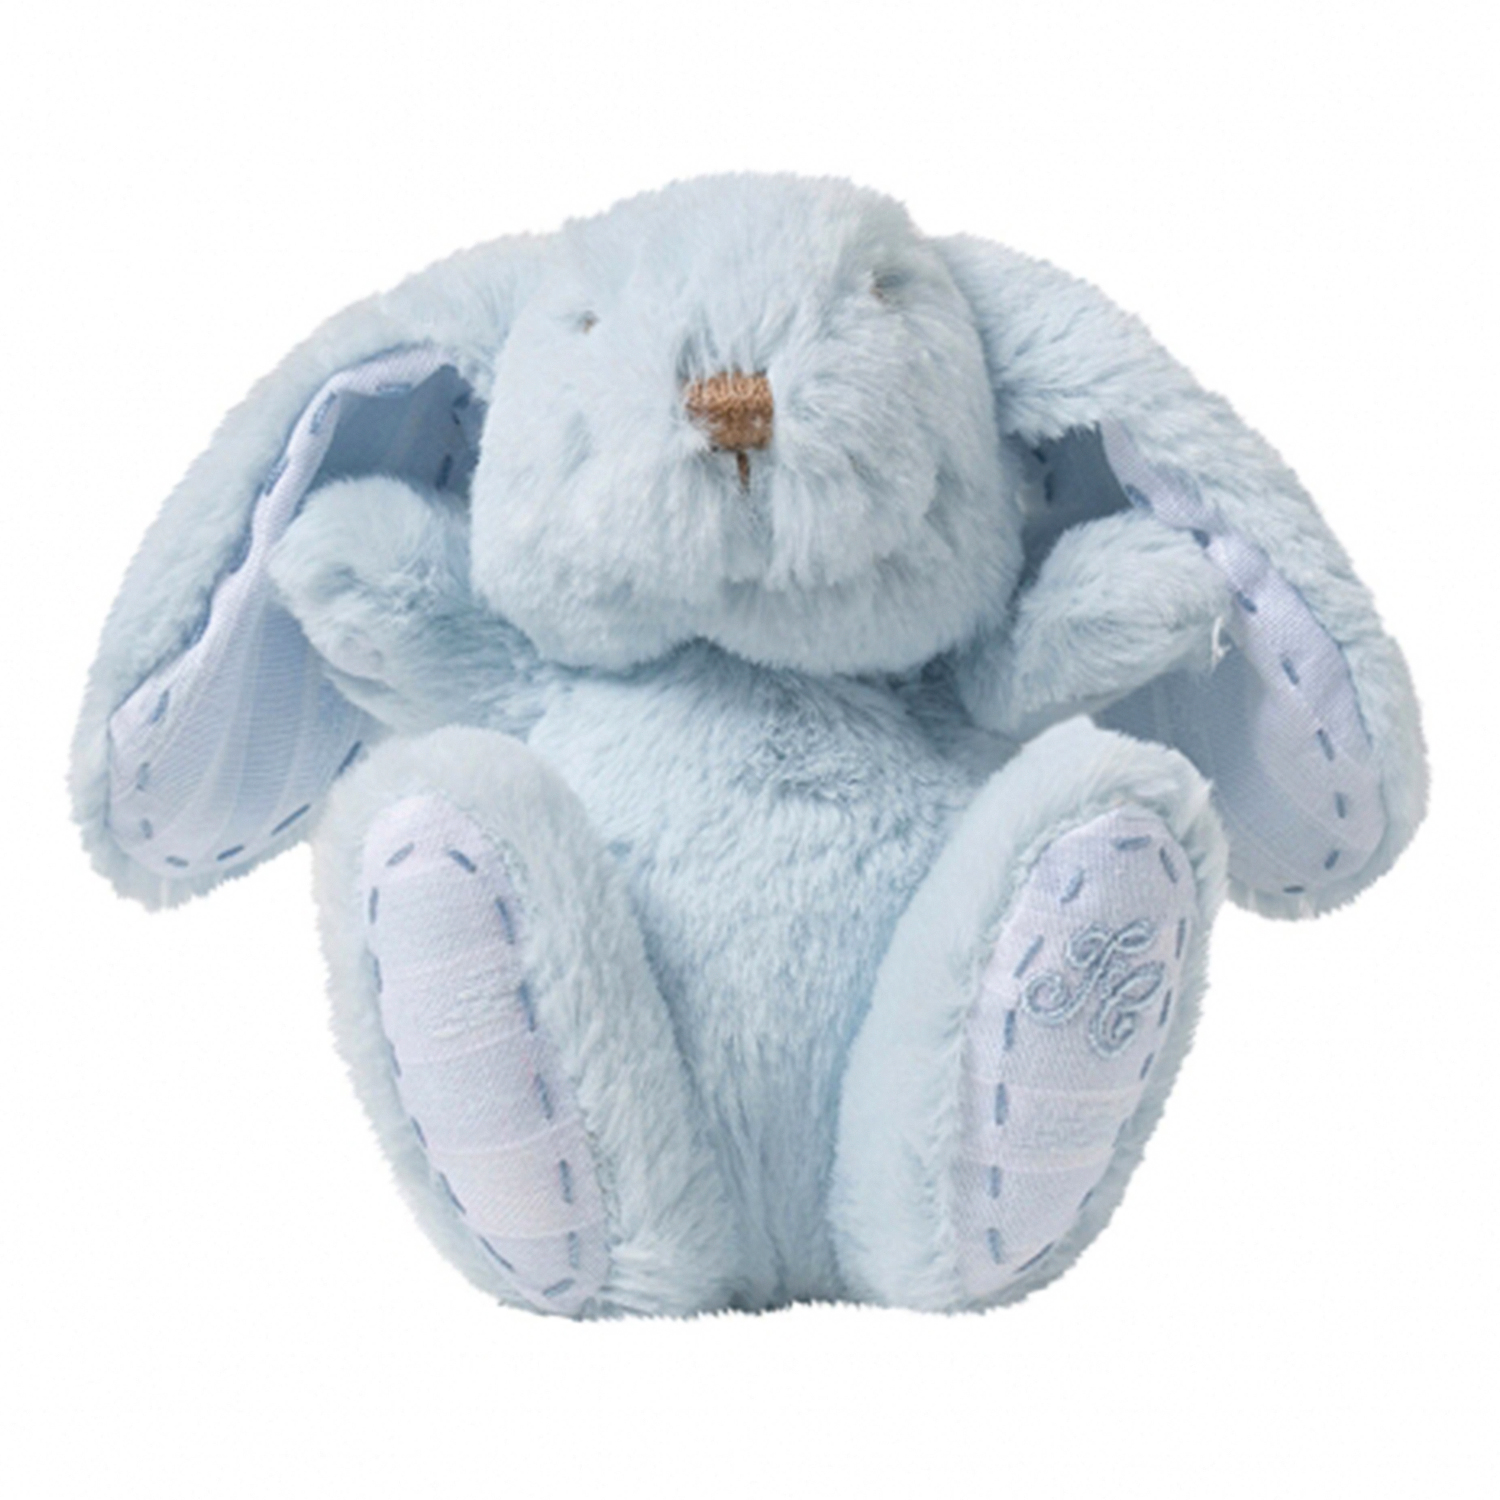 Кролик 12 лет. Tartine et chocolat кролик. Белый кролик мягкая игрушка винтажный. Норвежская игрушка kosedyr.